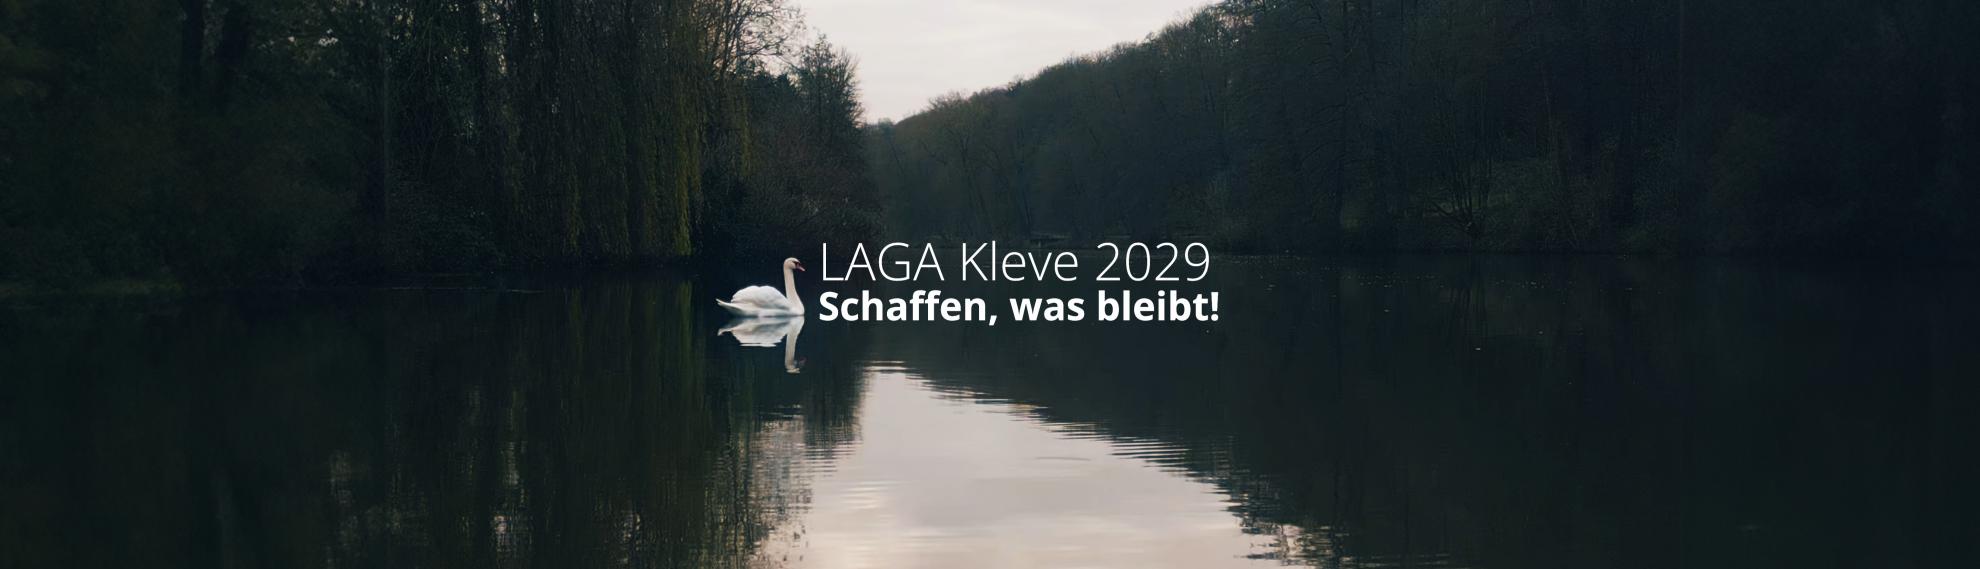 Ein Schwan auf dem Kermisdahl, daneben der Schriftzug: Kleve LAGA 2029 Schaffen, was bleibt!